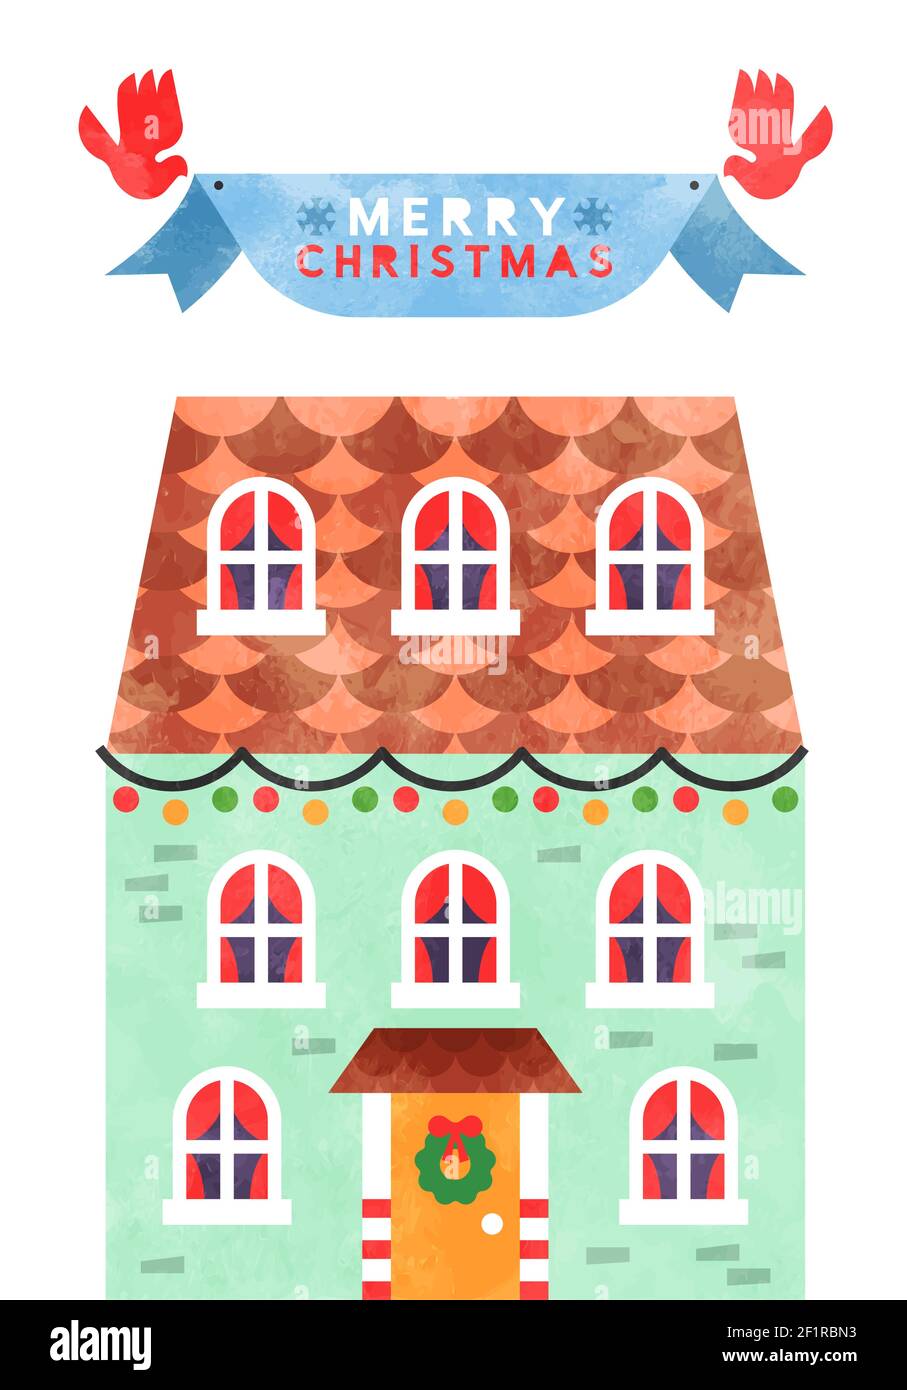 Frohe Weihnachten Grußkarte Illustration, niedlichen Aquarell Cartoon Haus mit festlichen Weihnachten Saison Dekoration in modernen geometrischen Stil und Vögel halten Stock Vektor